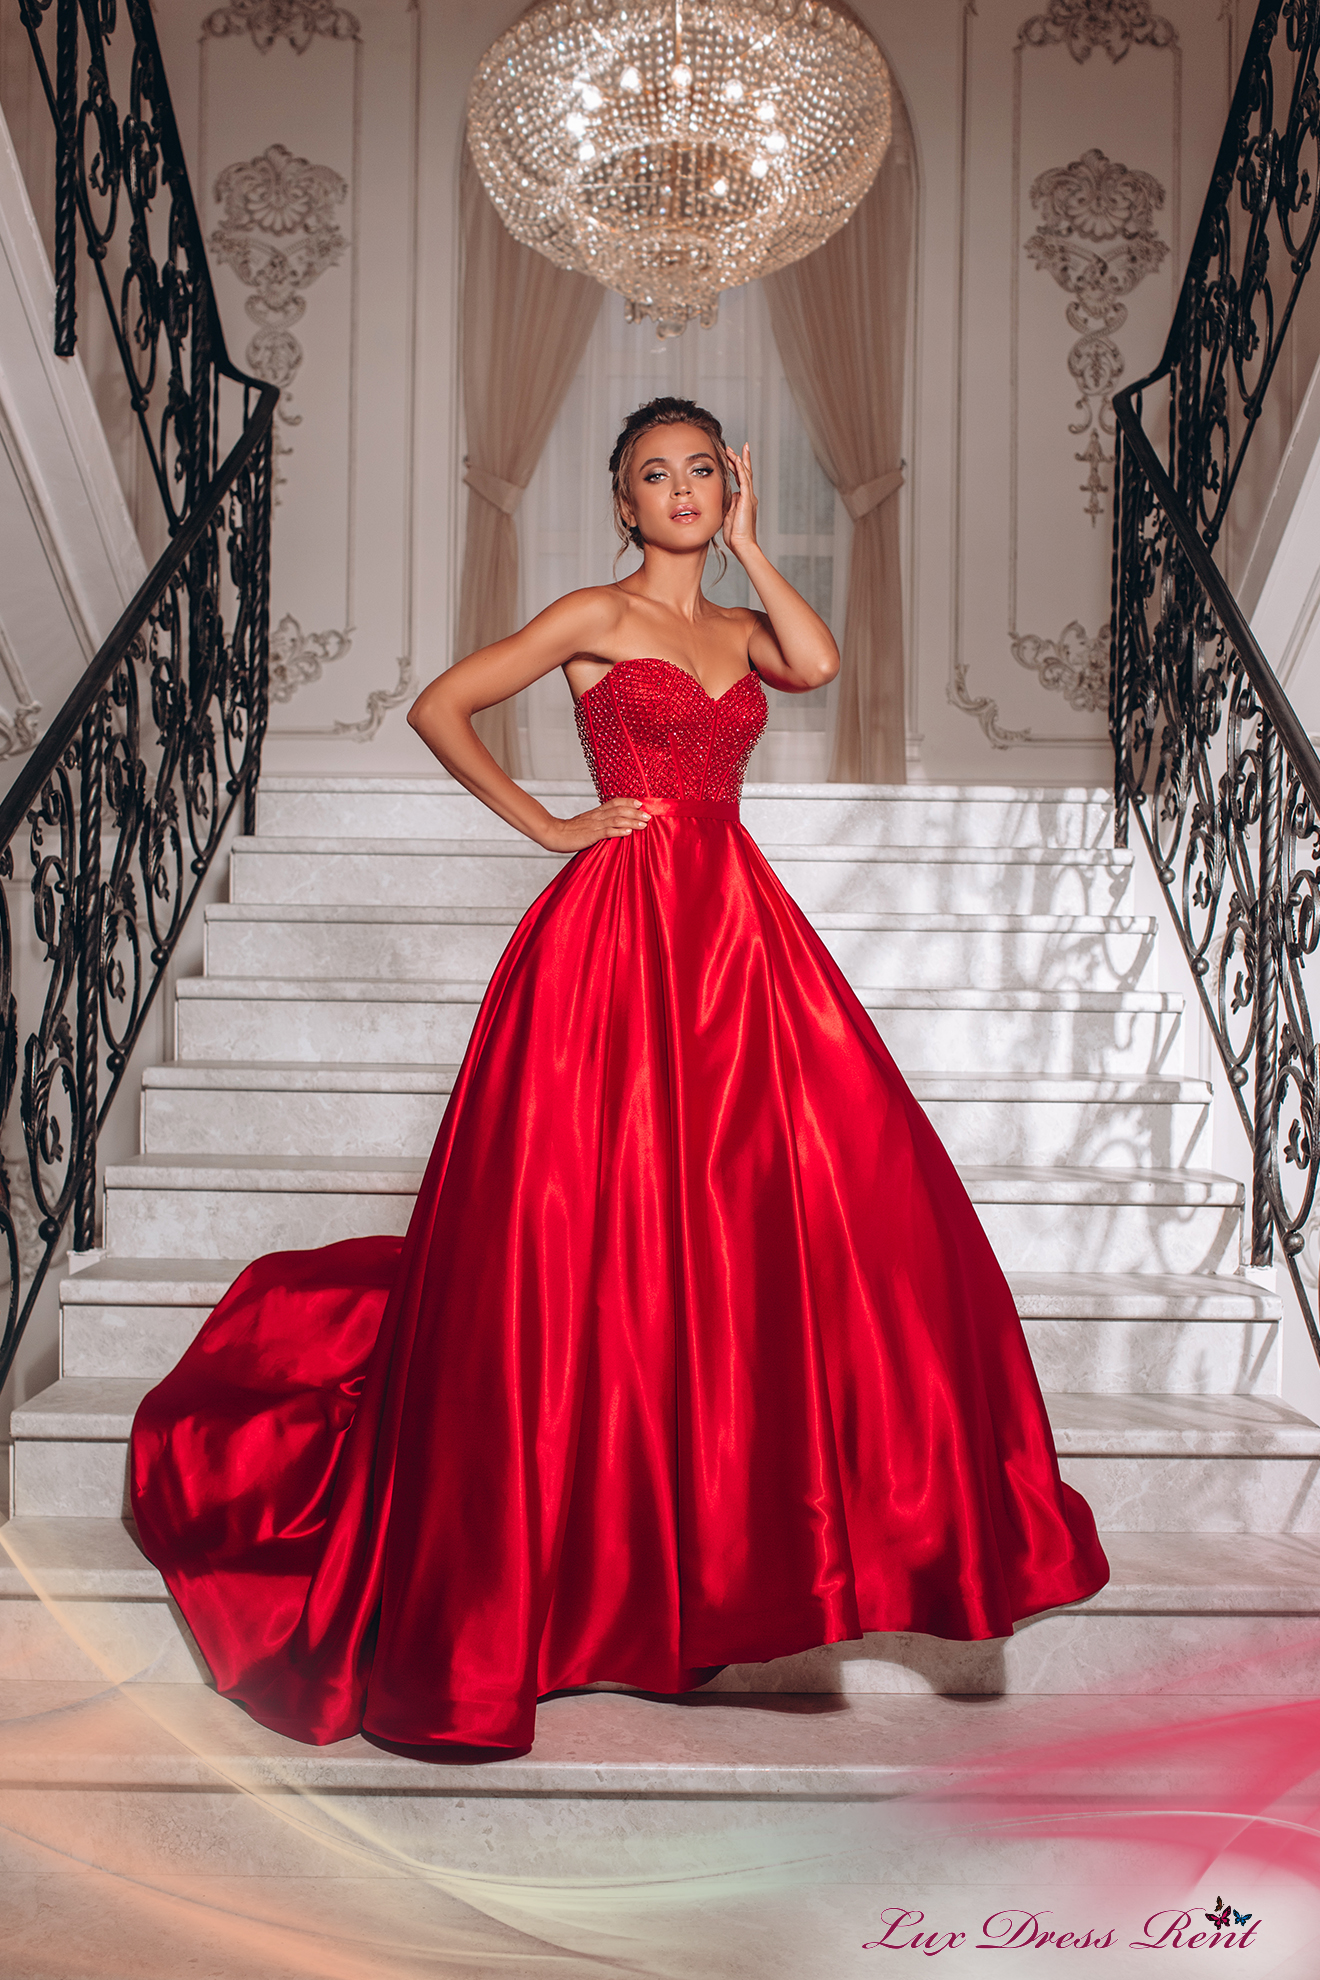 Прокат платье недорого. Вечерние платья Oqshom liboslari 2021. Окшом либослари 2021. Красивые вечерние платья. Красное вечернее платье.